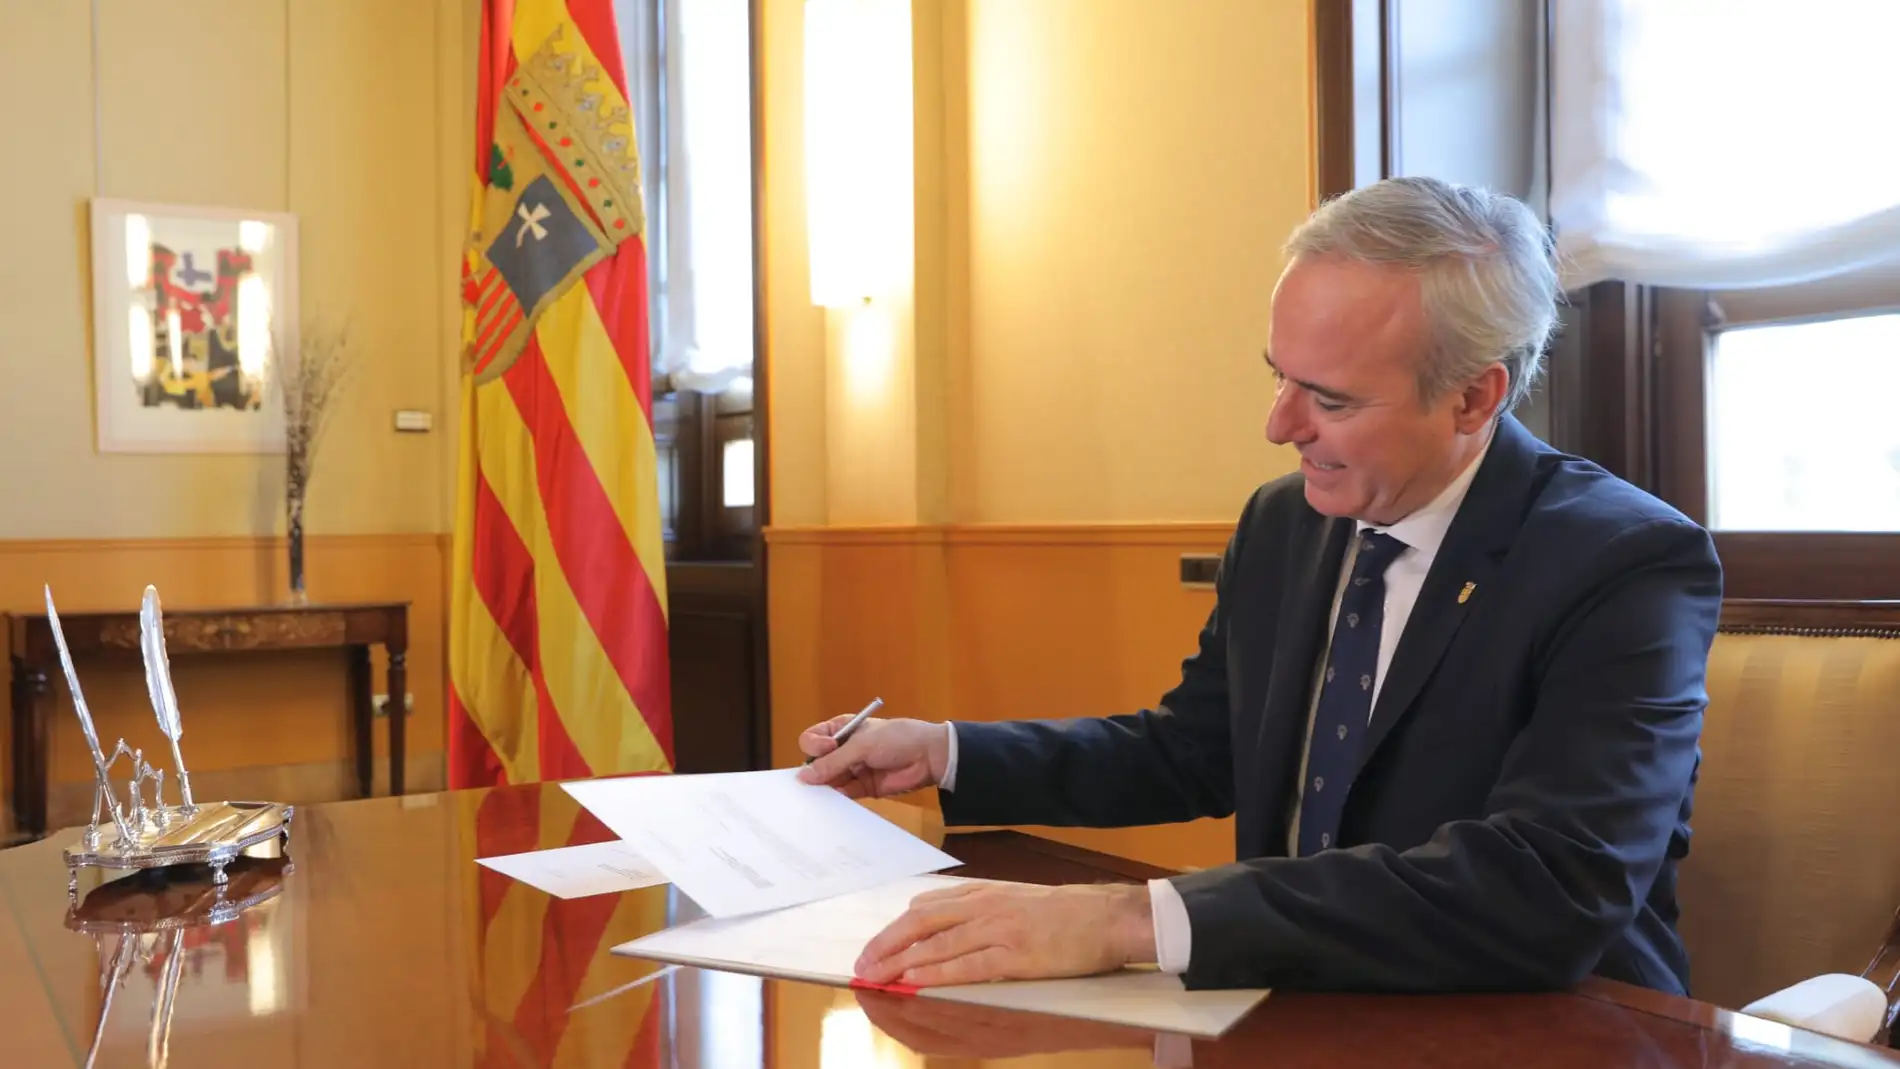 Azcón ha firmado los decretos de nombramiento de los nuevos consejeros